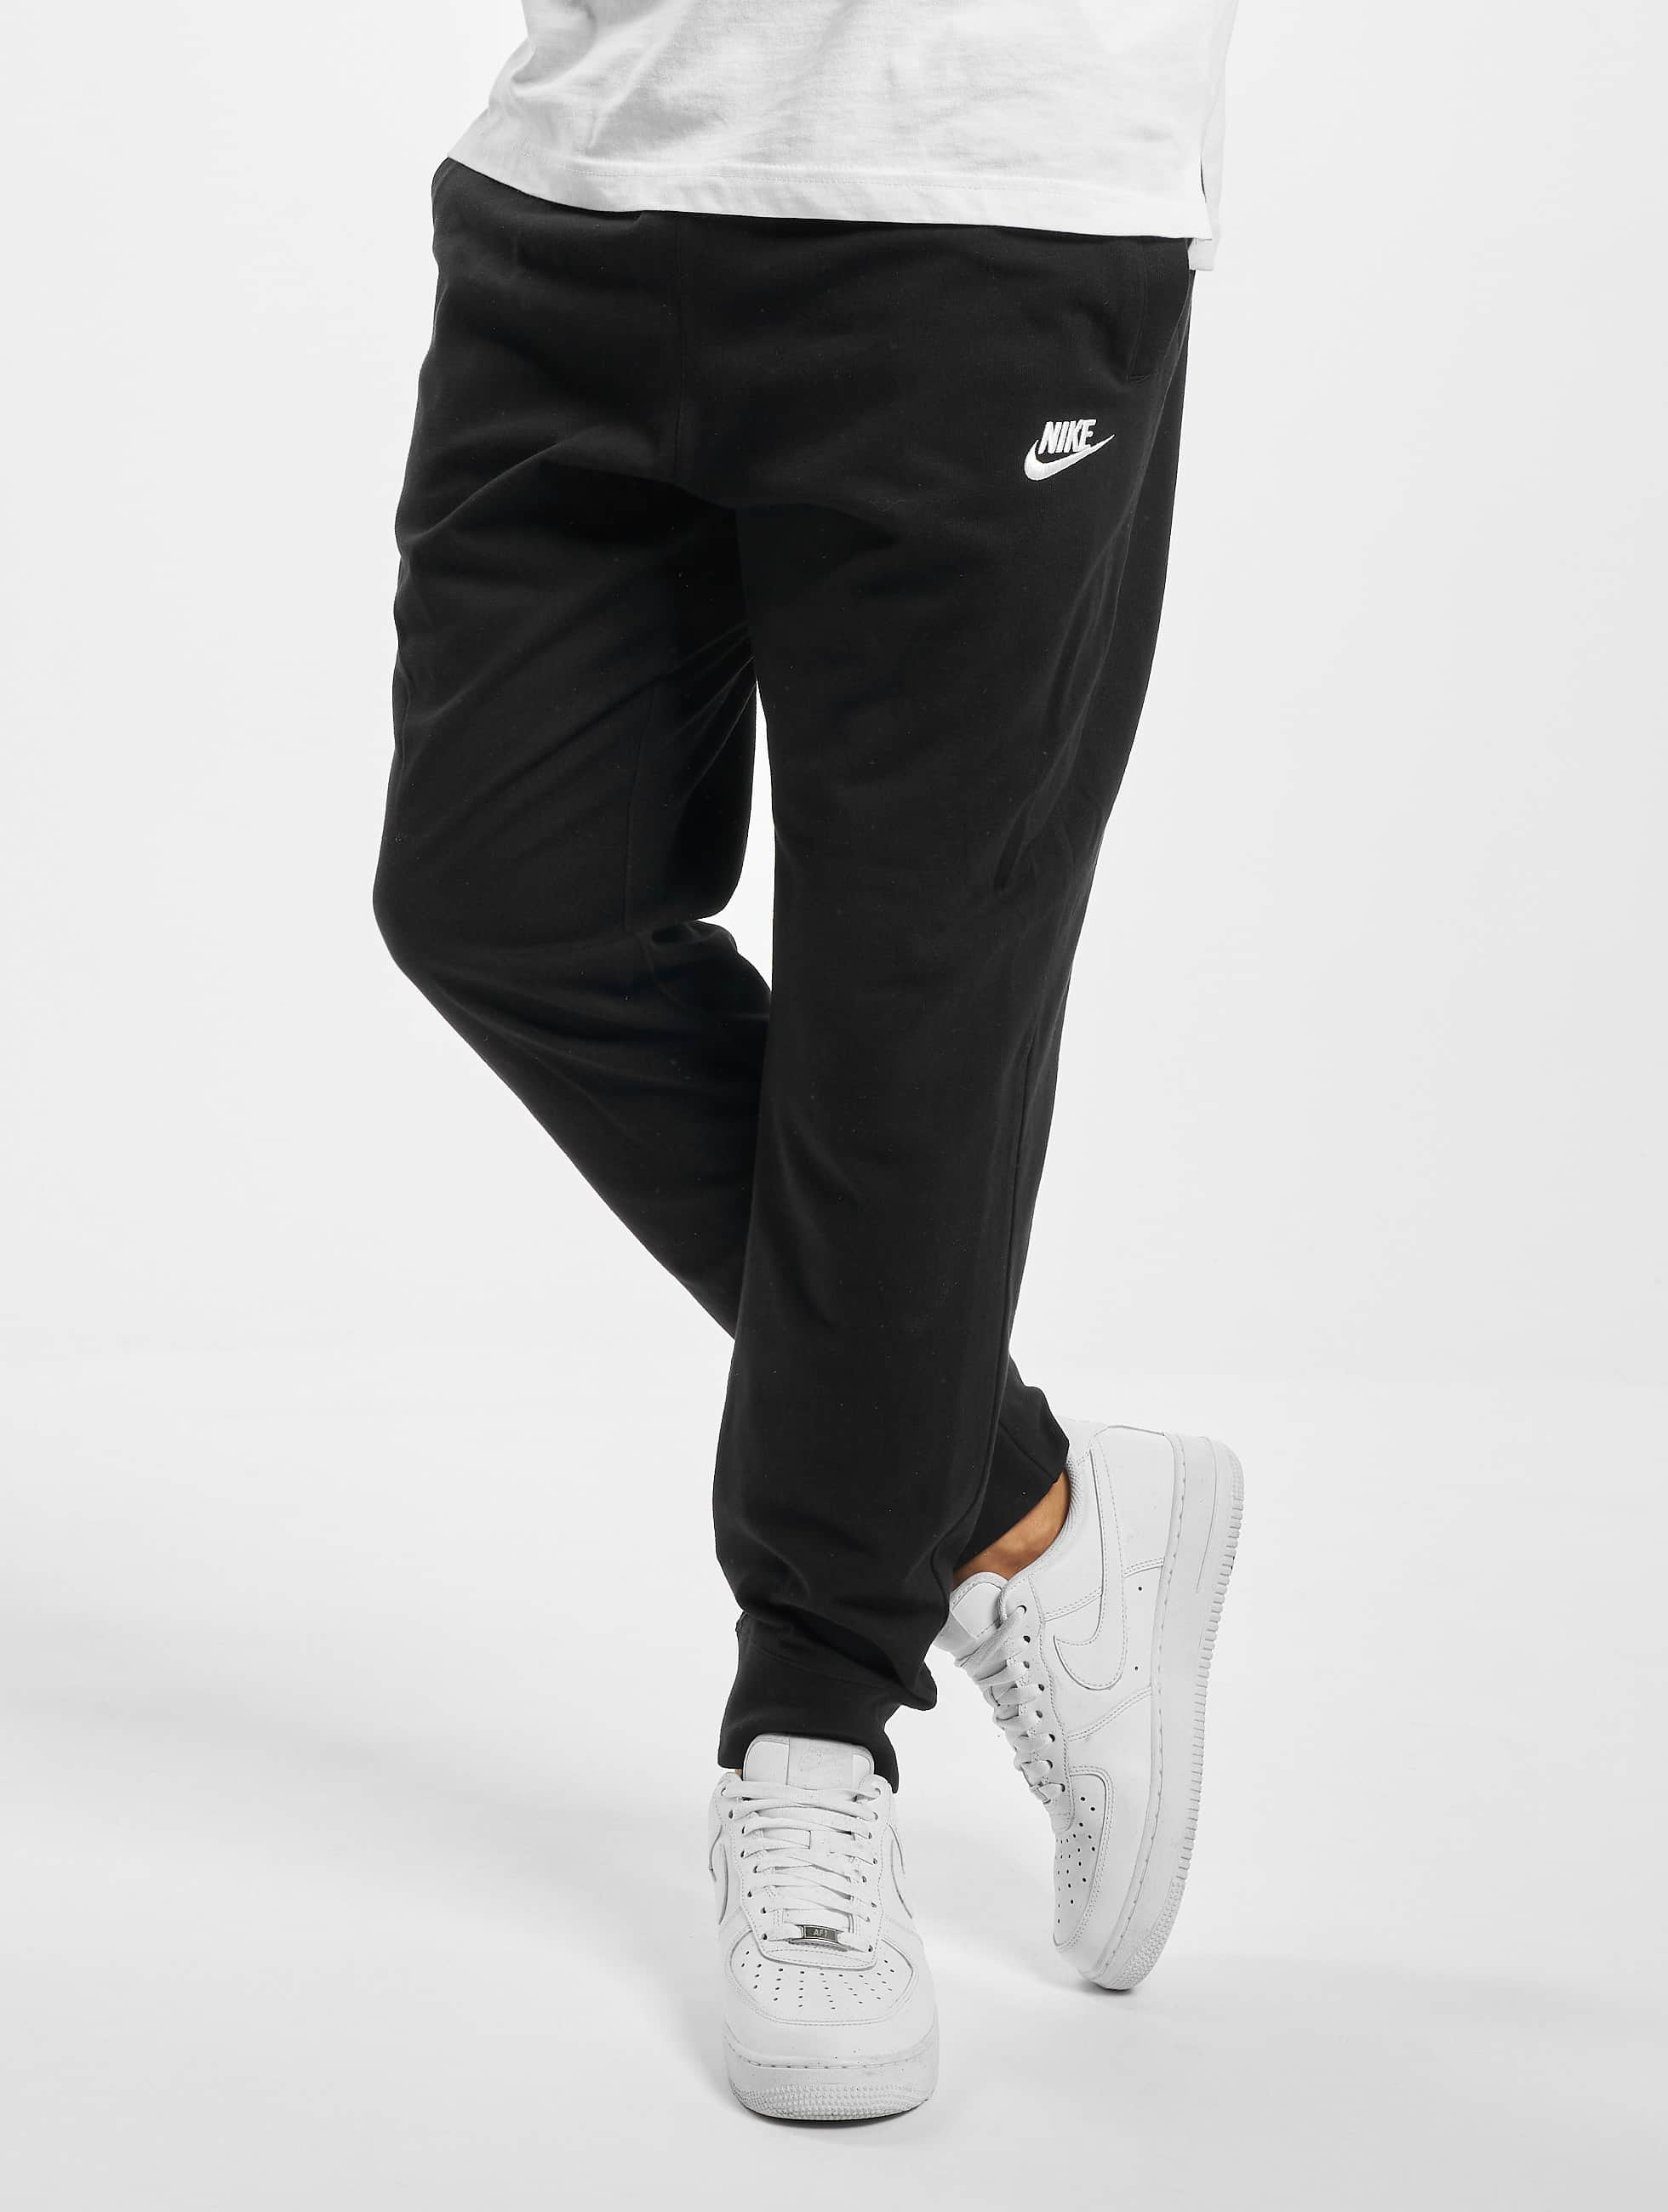 Nike broek / Club in zwart 737863